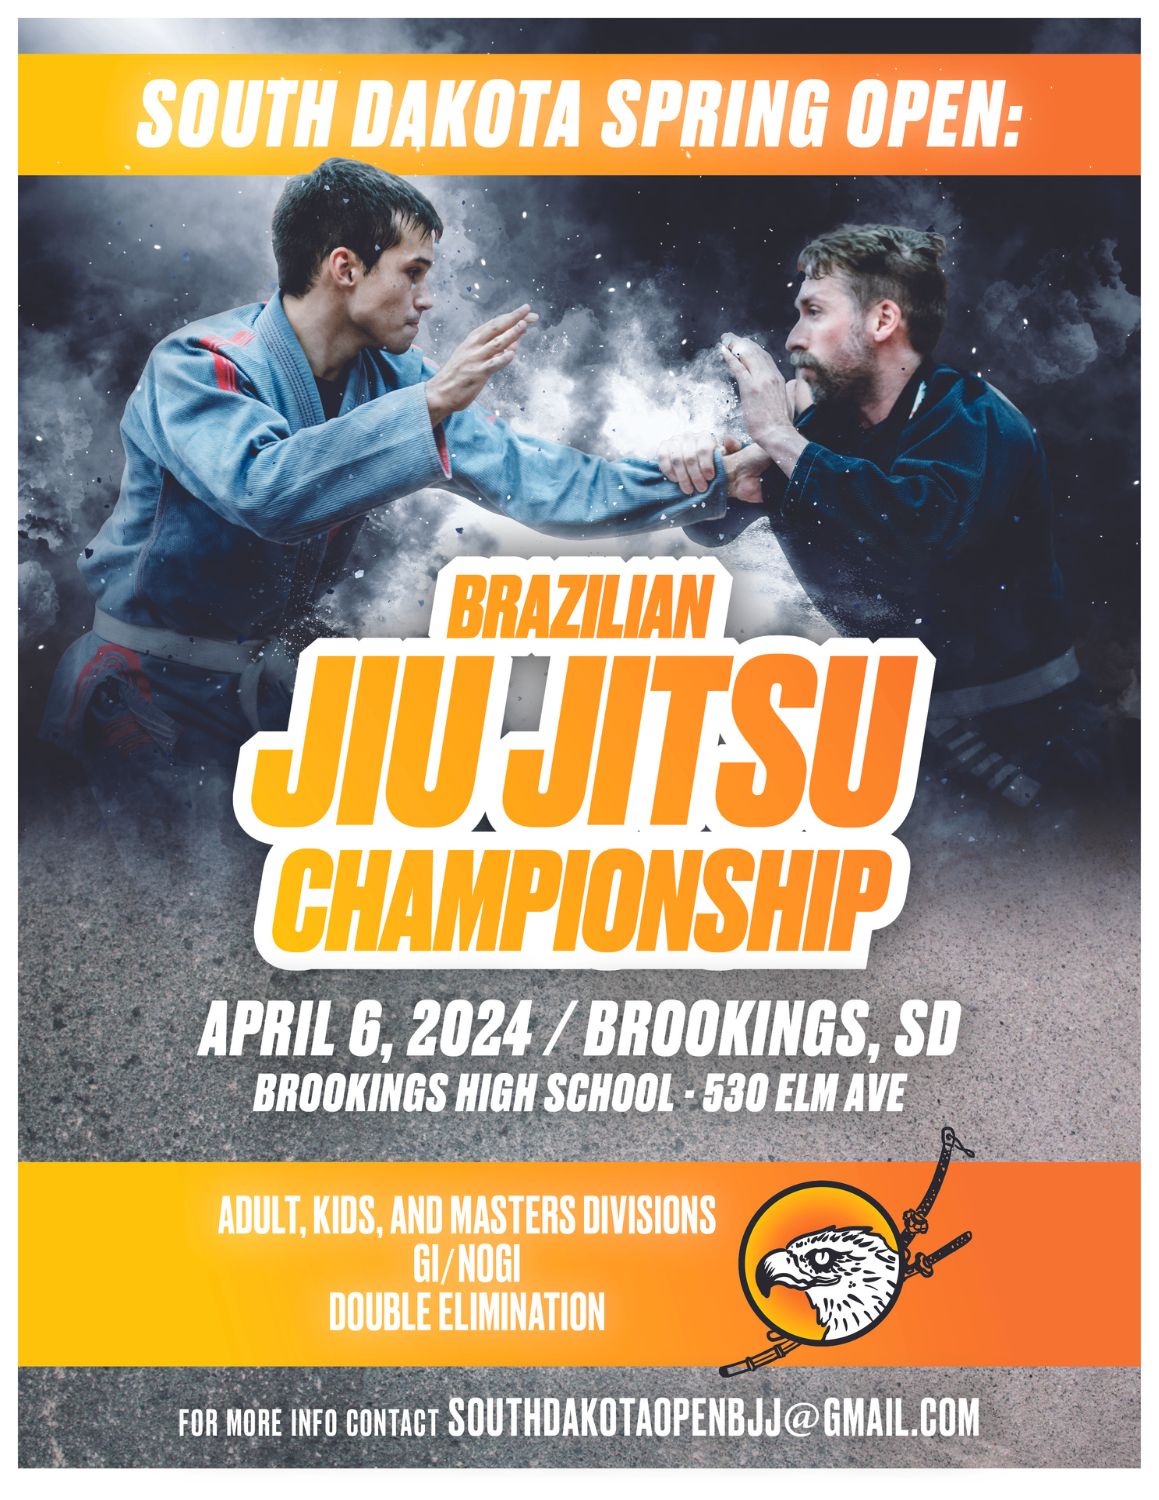 South Dakota Spring Open: Brazilian Jiu Jitsu Championship